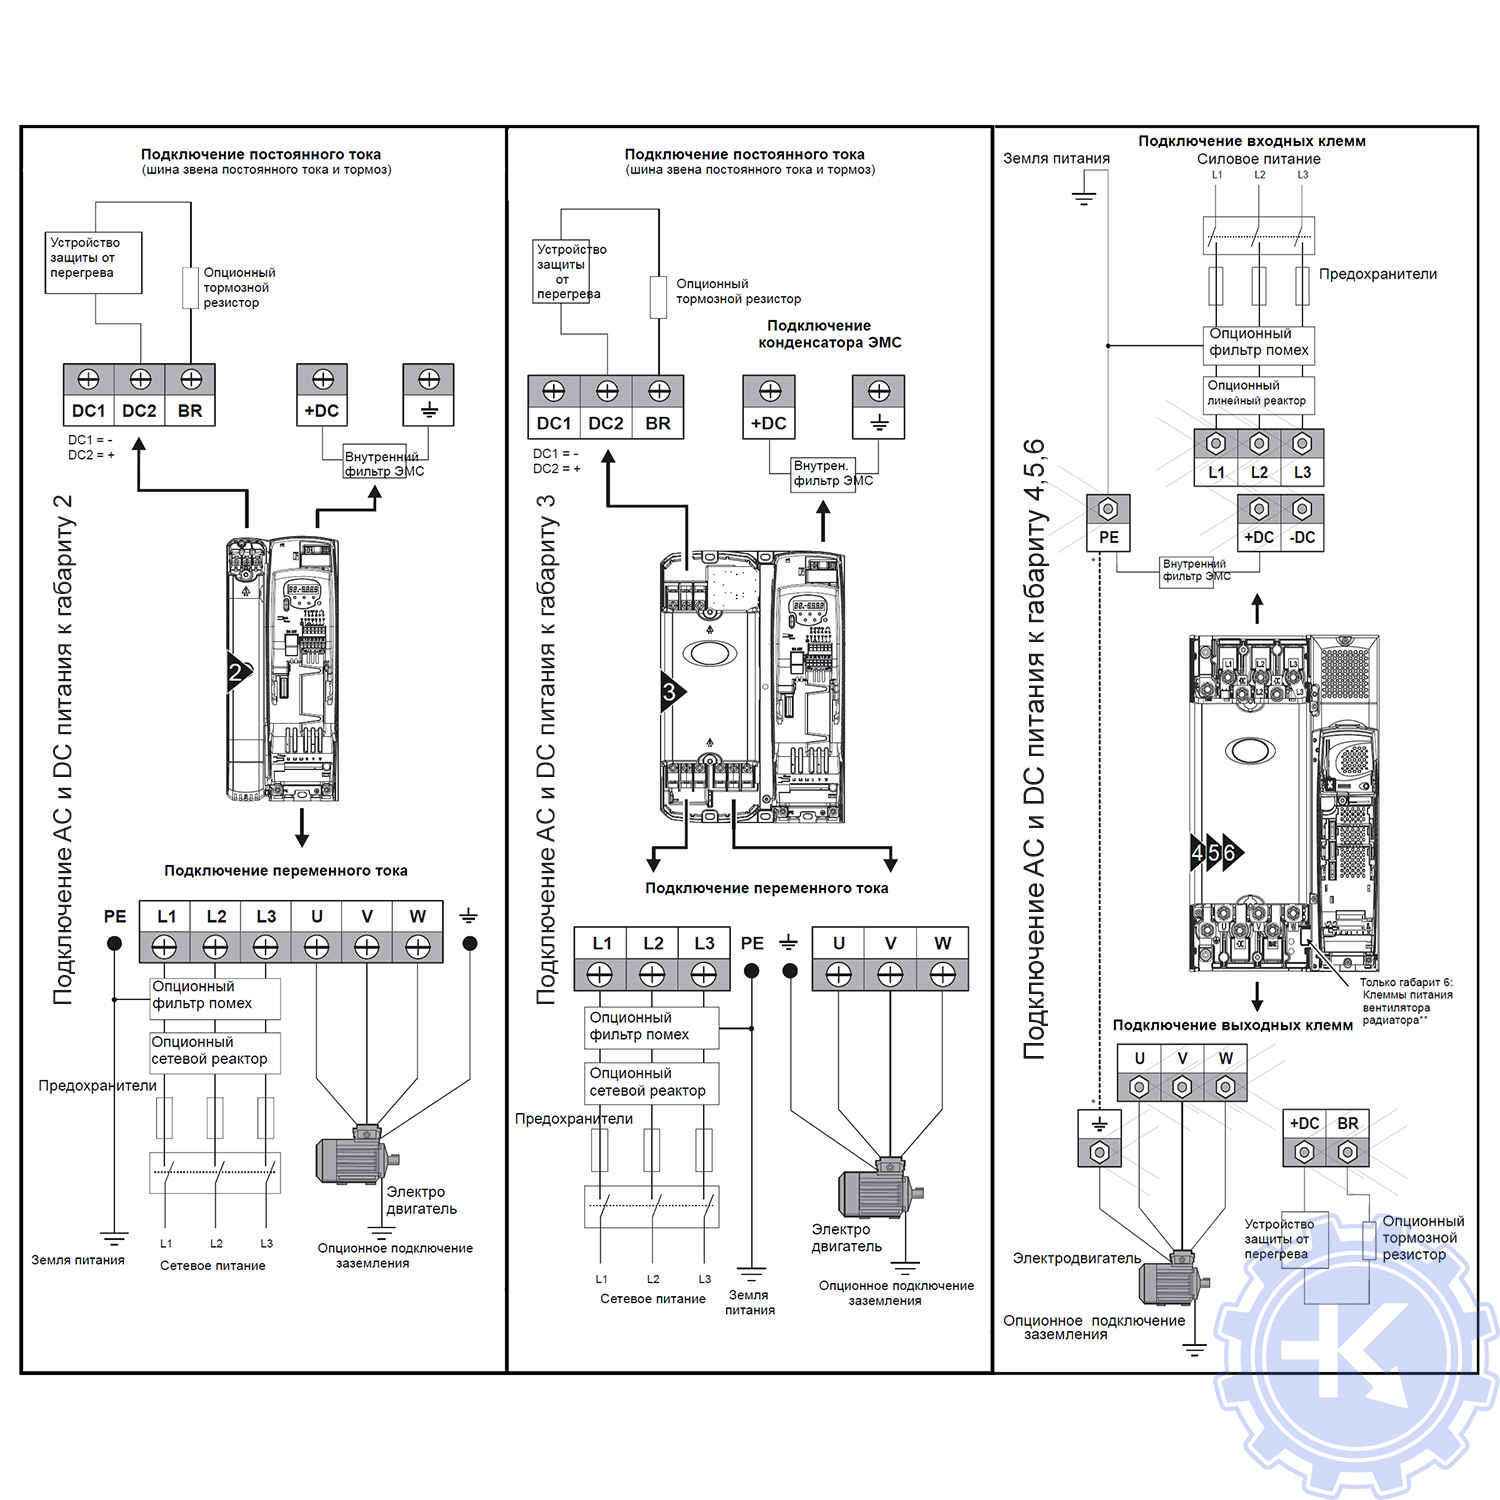 Схема подключения питания частотного преобразователя и Control techniques Commander SK (габарит 2, 3, 4-6)